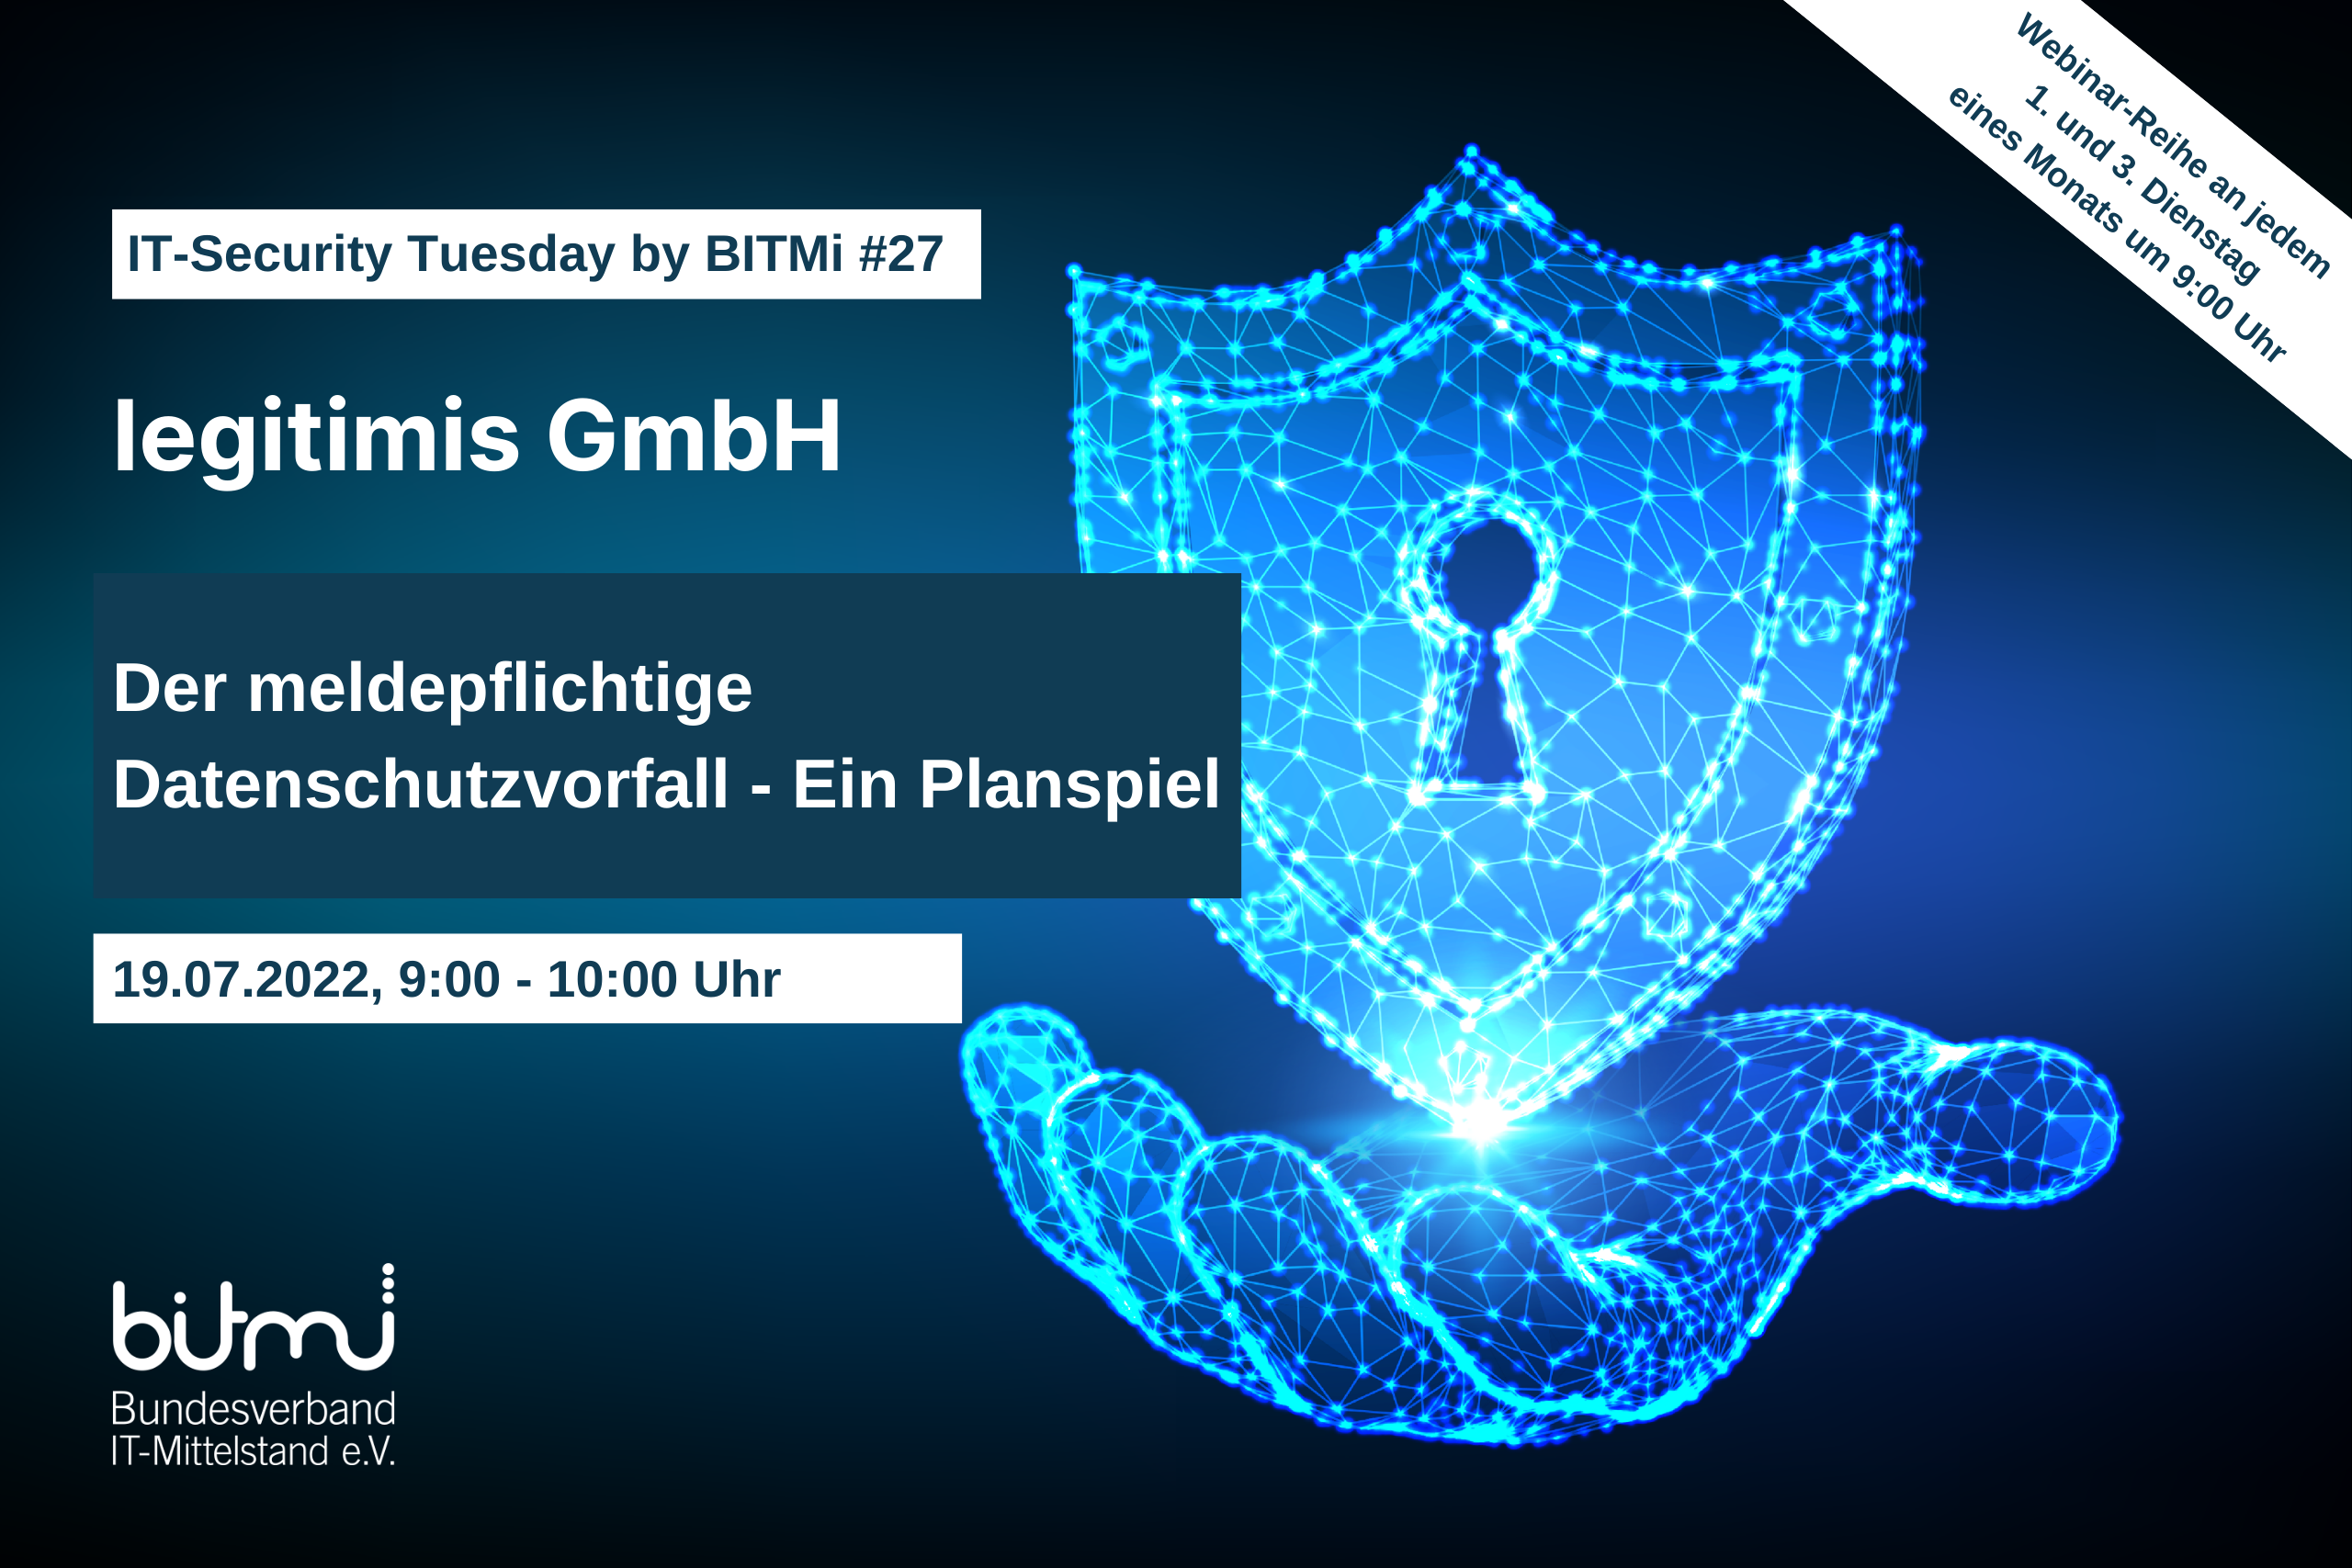 IT-Security Tuesday mit BITMi Mitglied legitimis GmbH: „Der meldepflichtige Datenschutzvorfall ─ Ein Planspiel“